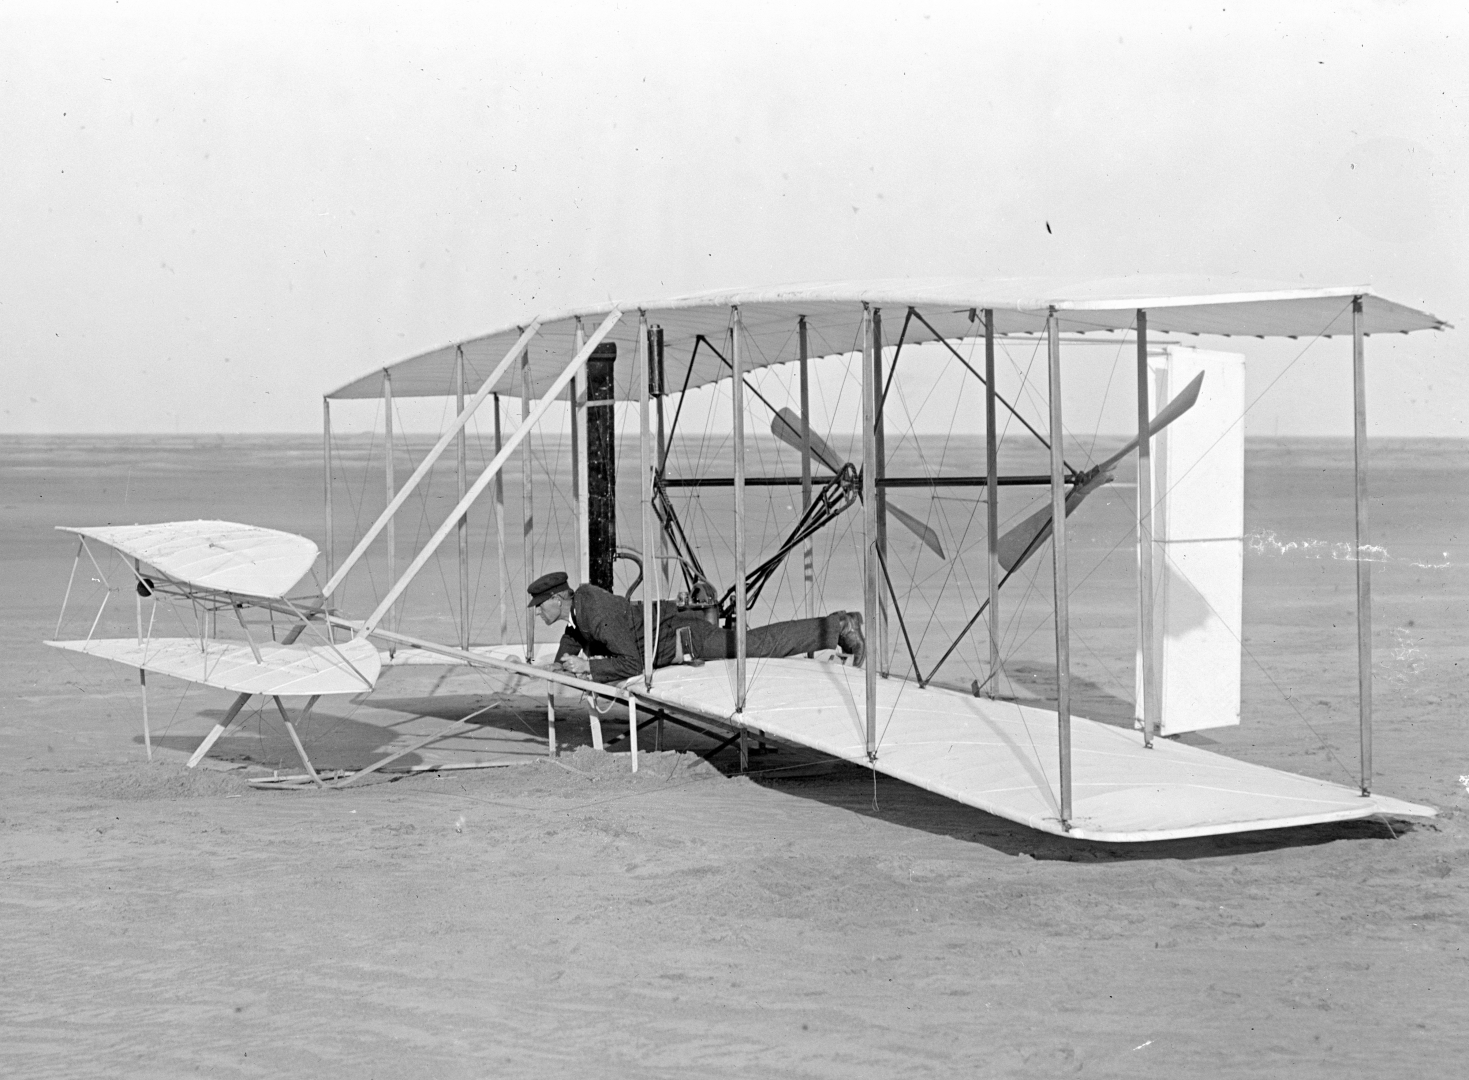 Первый самолёт: как назывался, кто и когда построил